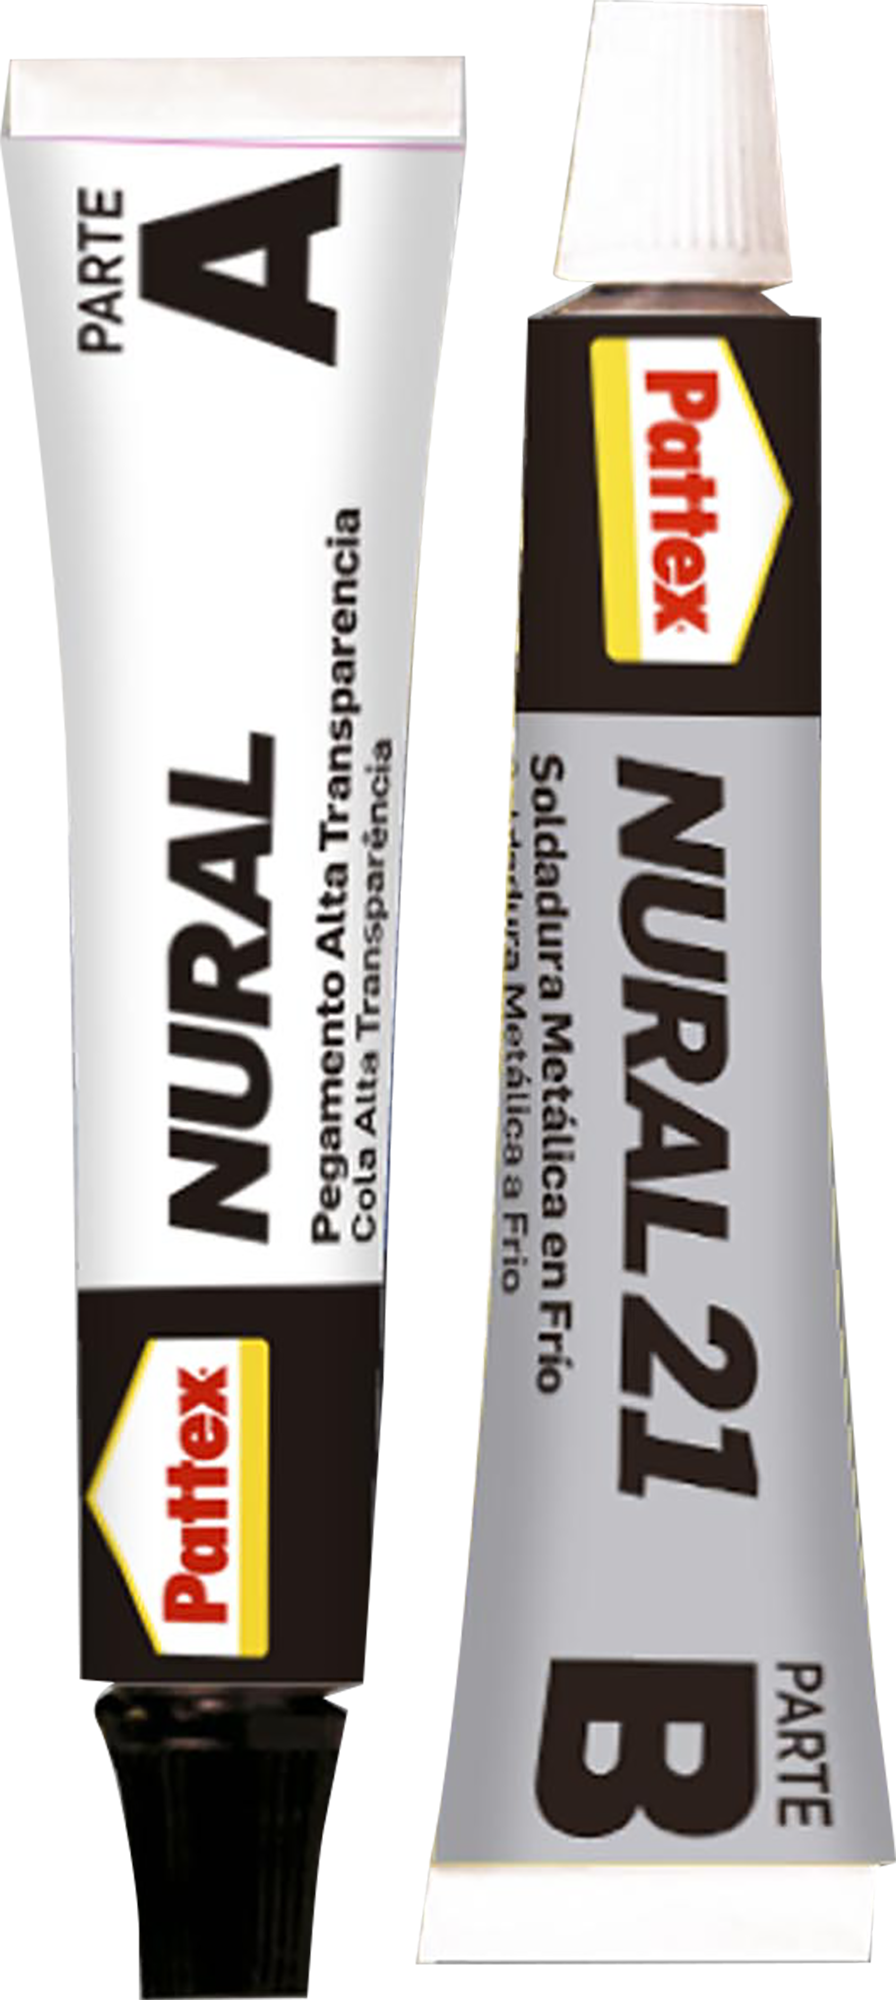 Adhesivo Nural-28 de 40 ml Pattex precios comprar Adhesivo Nural-28 de 40  ml Pattex precio barato